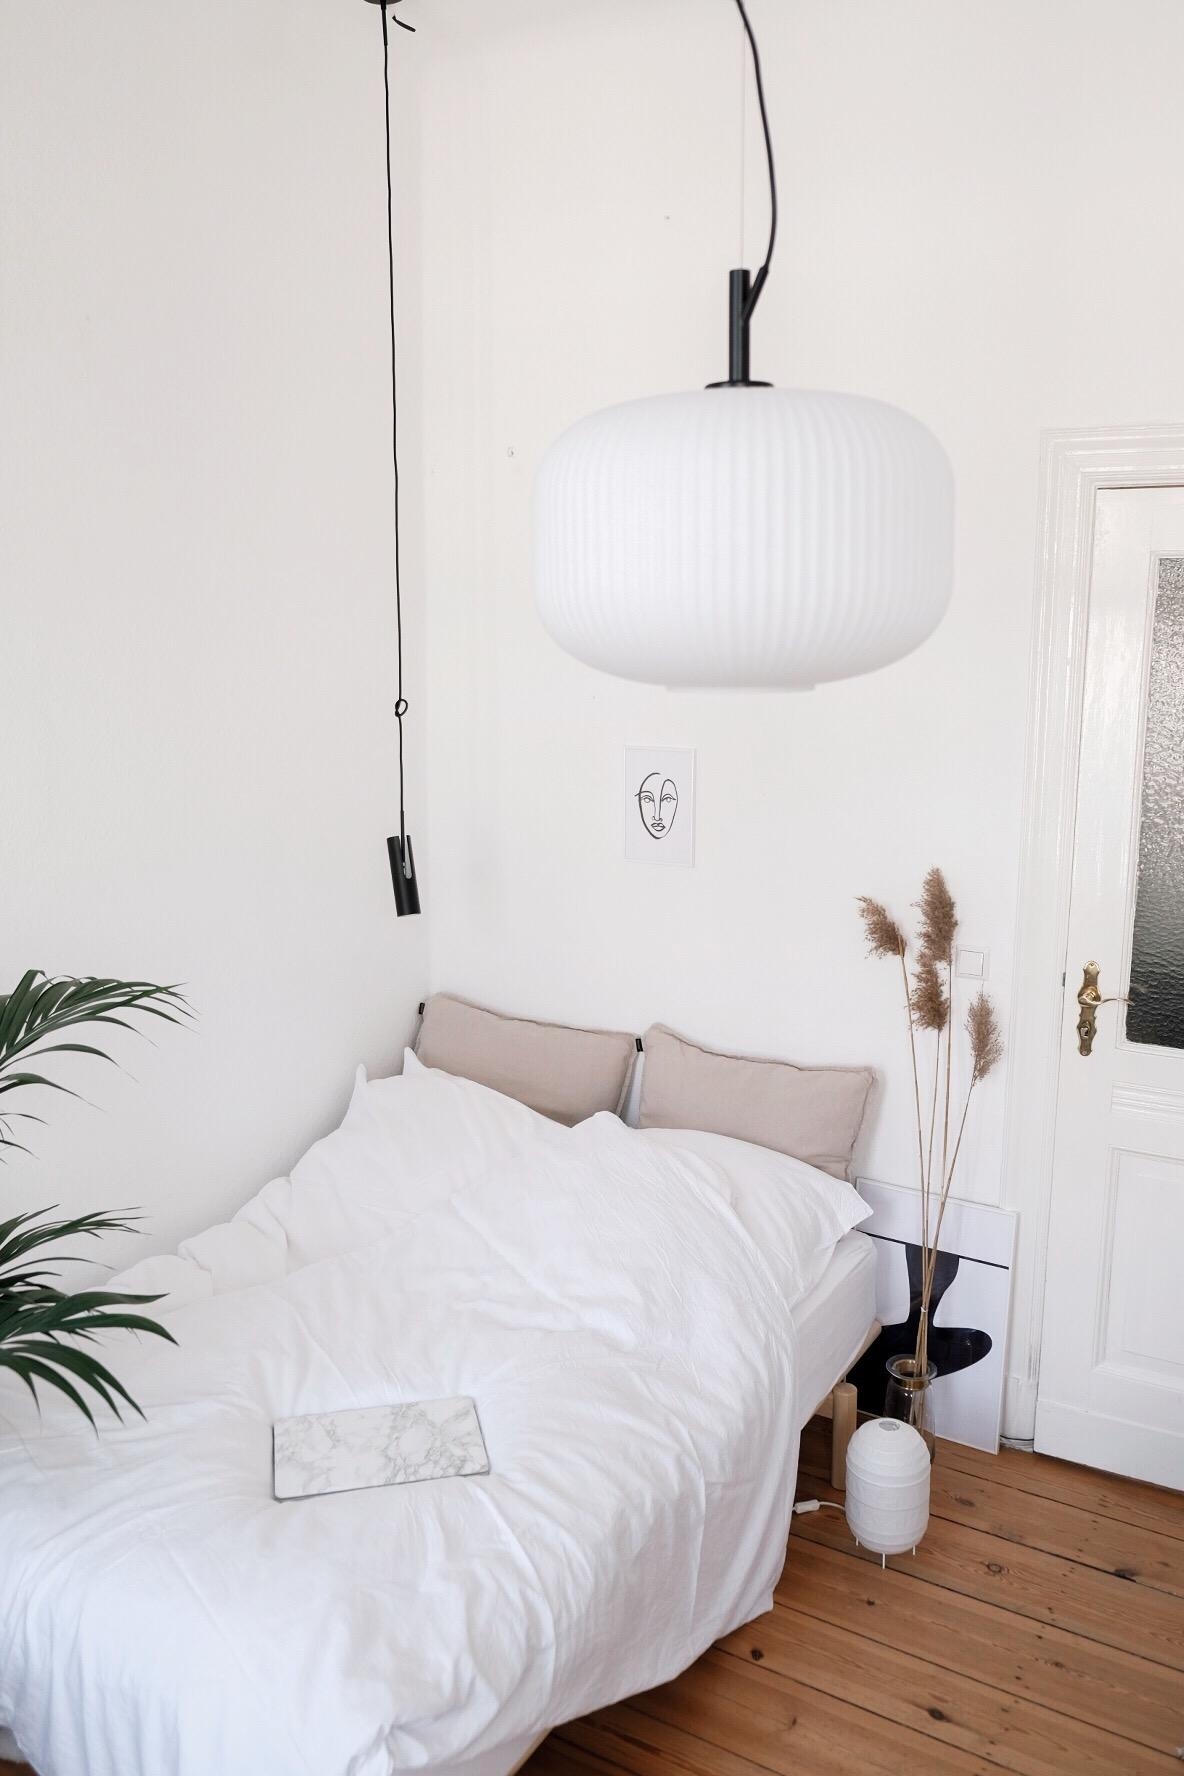 #bedroom #lampe #deckenleuchte #bett #schlafzimmer #lampen #altbau #bedroominspo #deko 